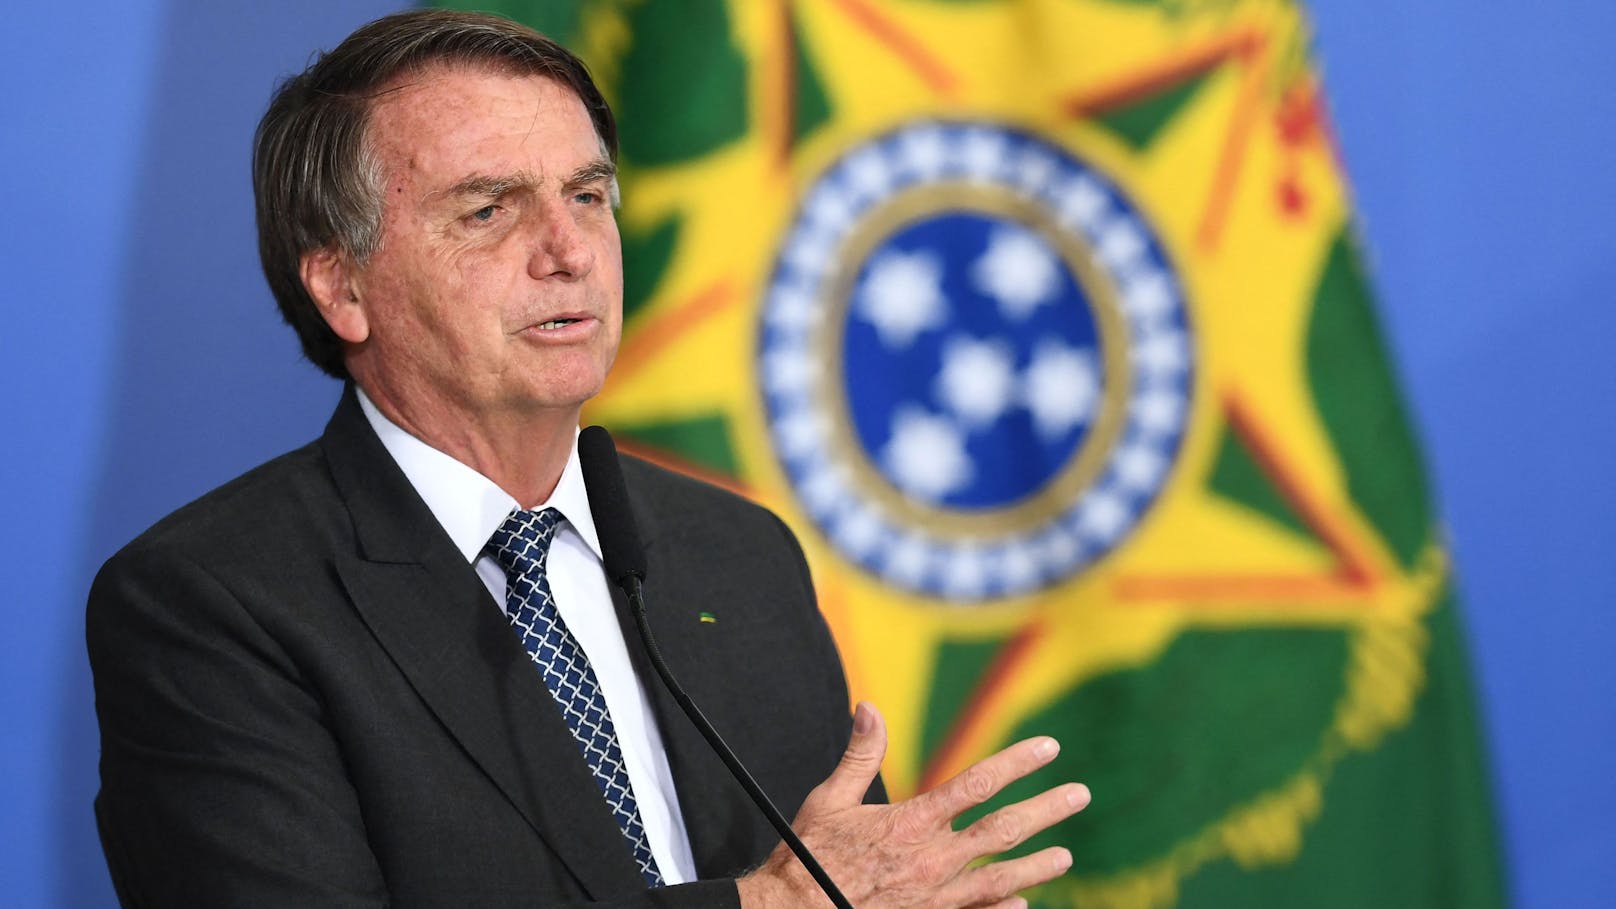 Jair Bolsonaro hat am 31. Oktober die Stichwahl um das Präsidentenamt in Brasilien gegen den linken Ex-Präsidenten Lula verloren.